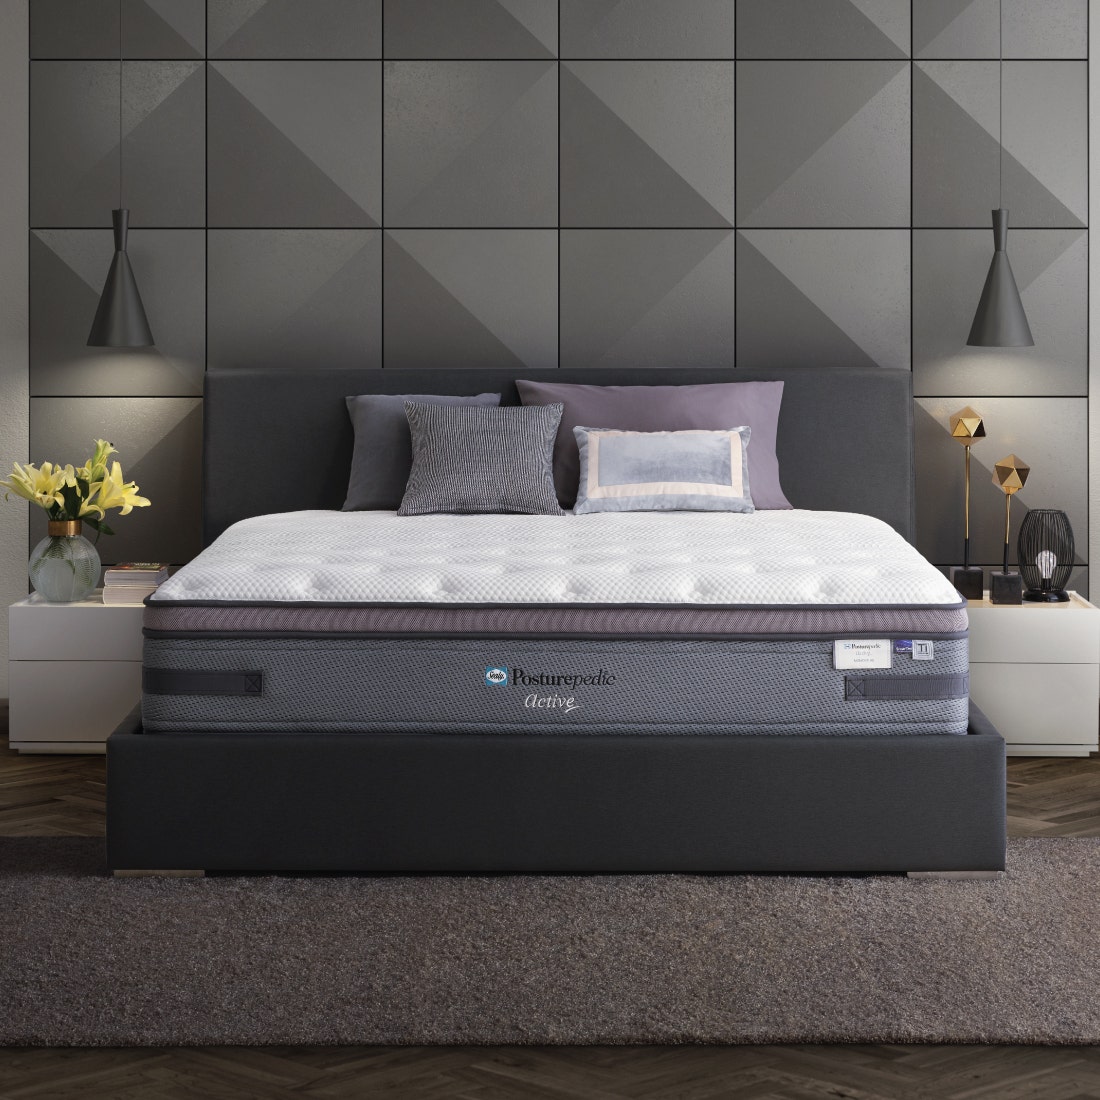 39010639-mattress-bedding-mattresses-spring-mattresses-31